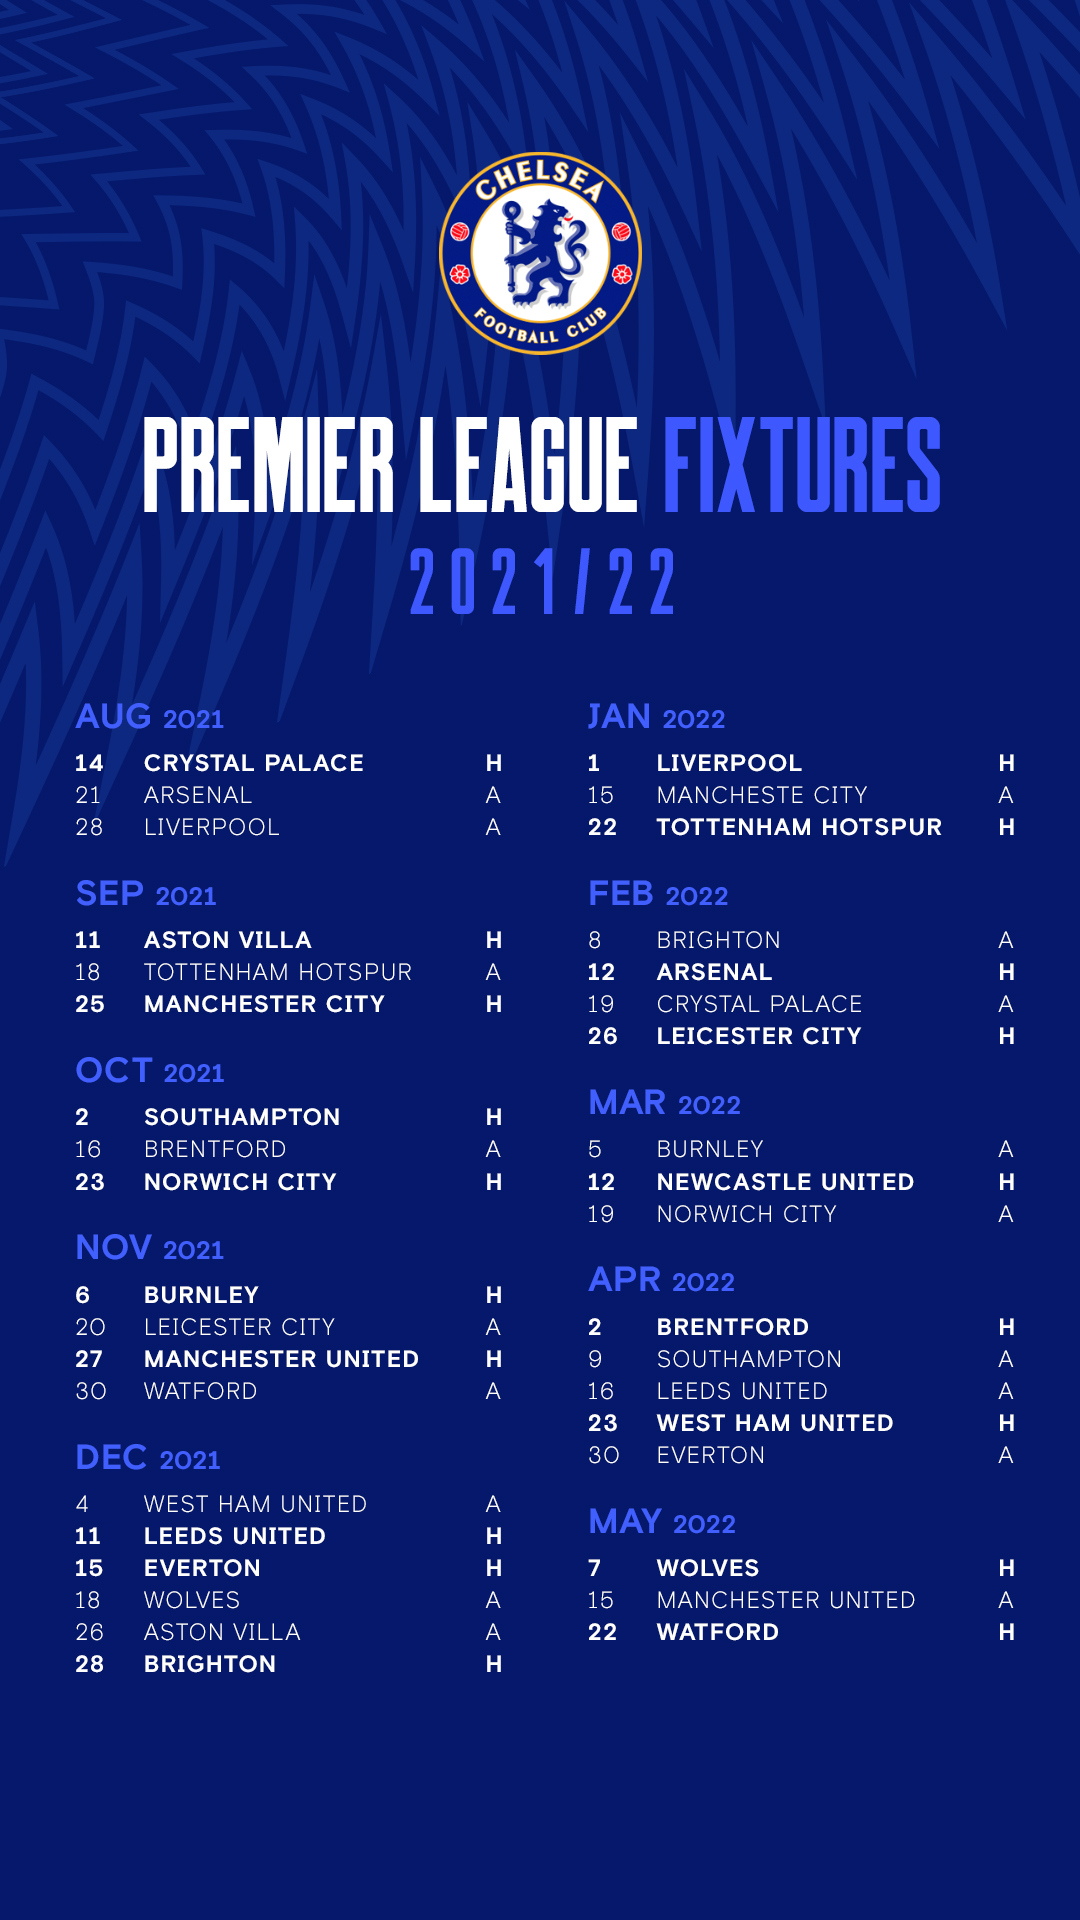 Chelsea Premier League Fixtures 2021/22 Season wallpaper xylans